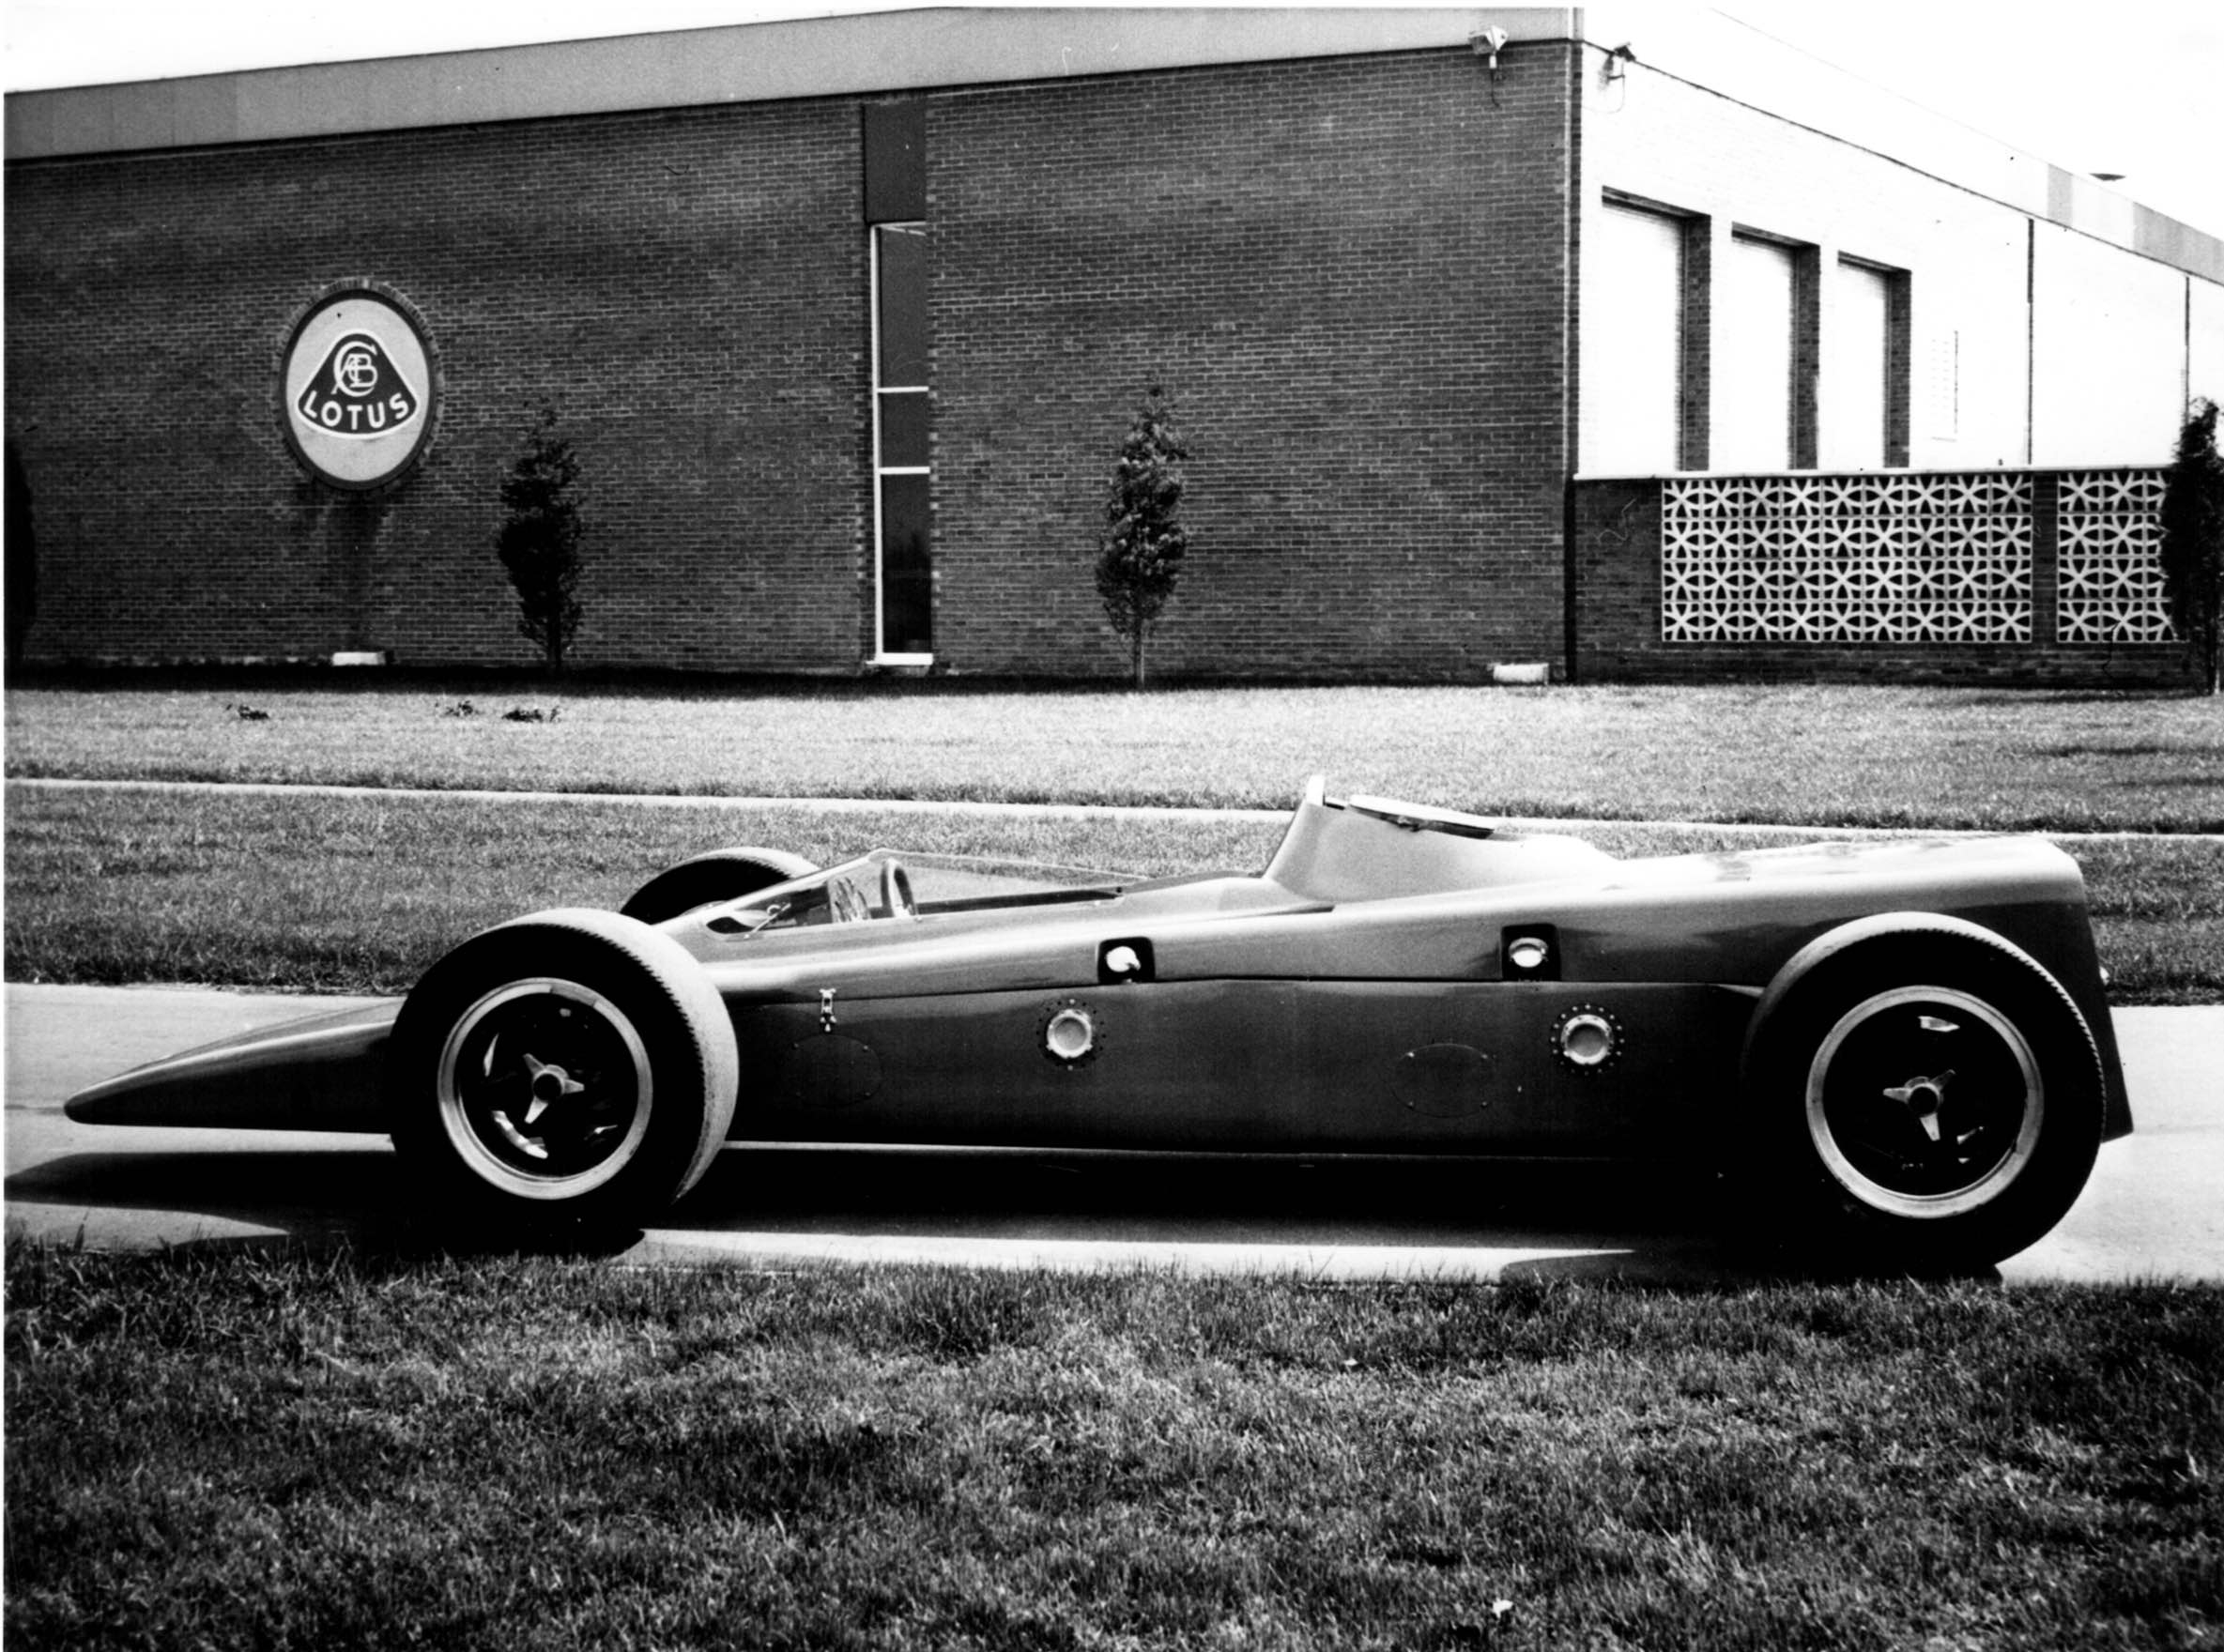 Lotus 56 Indy car